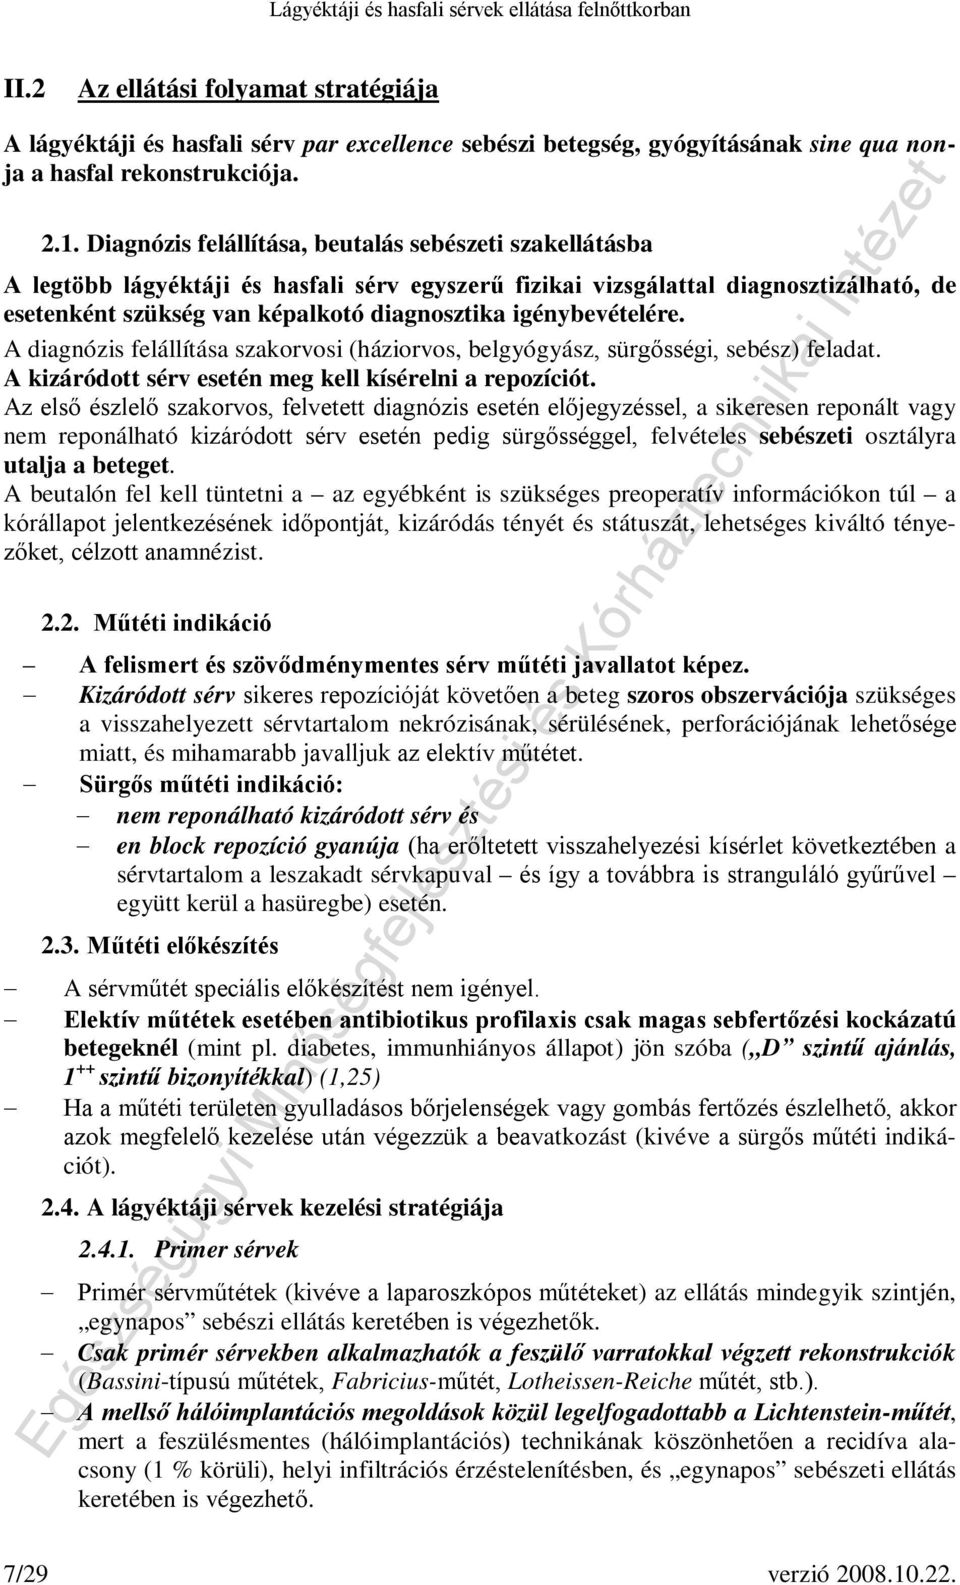 Lágyéktáji és hasfali sérvek ellátása felnőttkorban - PDF Free Download